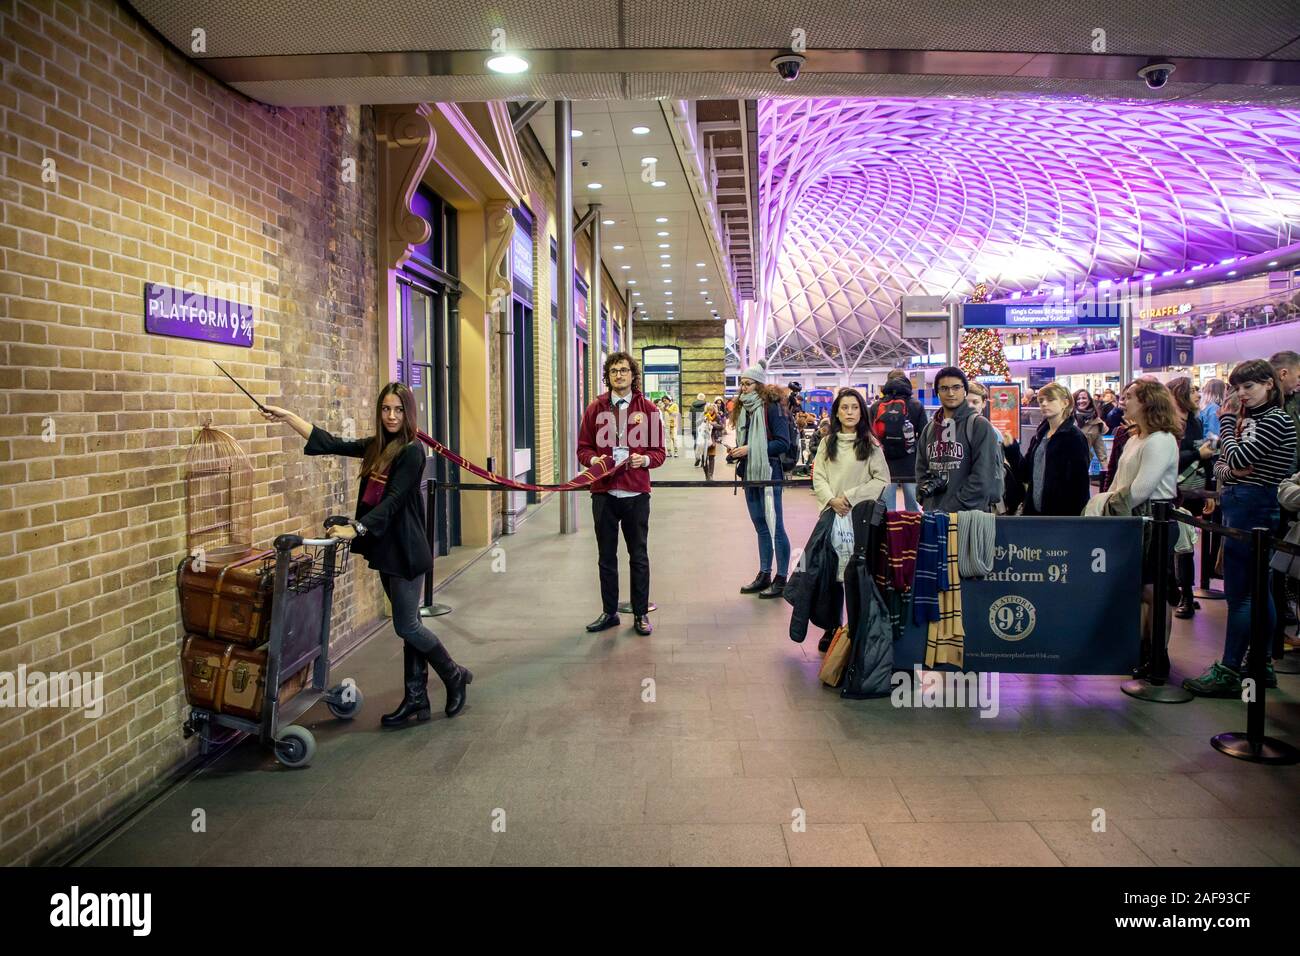 La estación de Kings Cross Station, la estación Hall, Londres, Gran Bretaña, la plataforma 9 3/4, la ubicación de la primera película de Harry Potter, Foto de stock